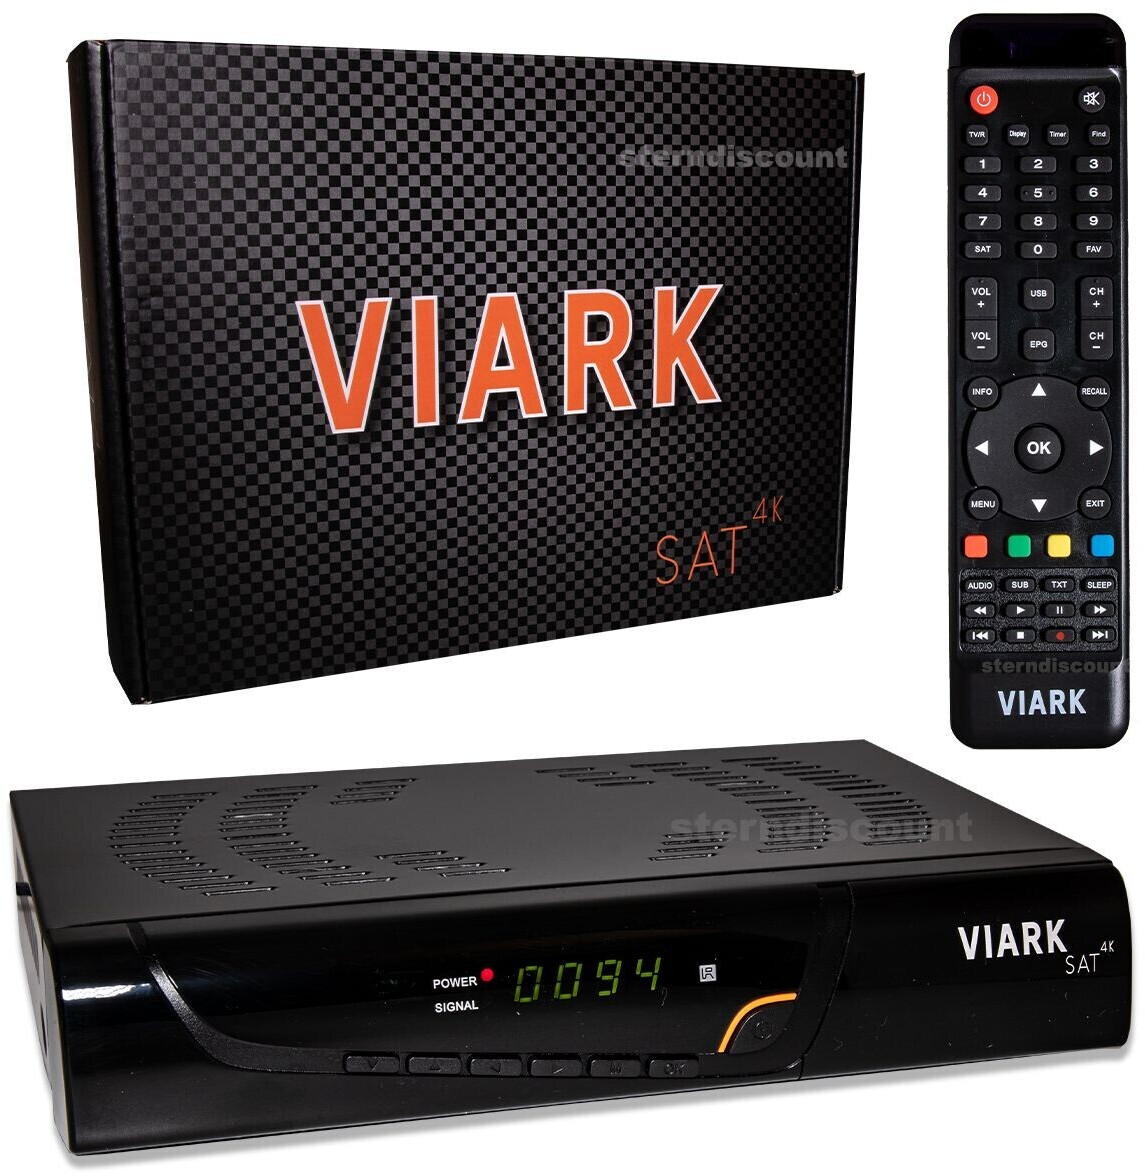 Viark SAT 4K y Viark SAT por 94€ - cholloschina